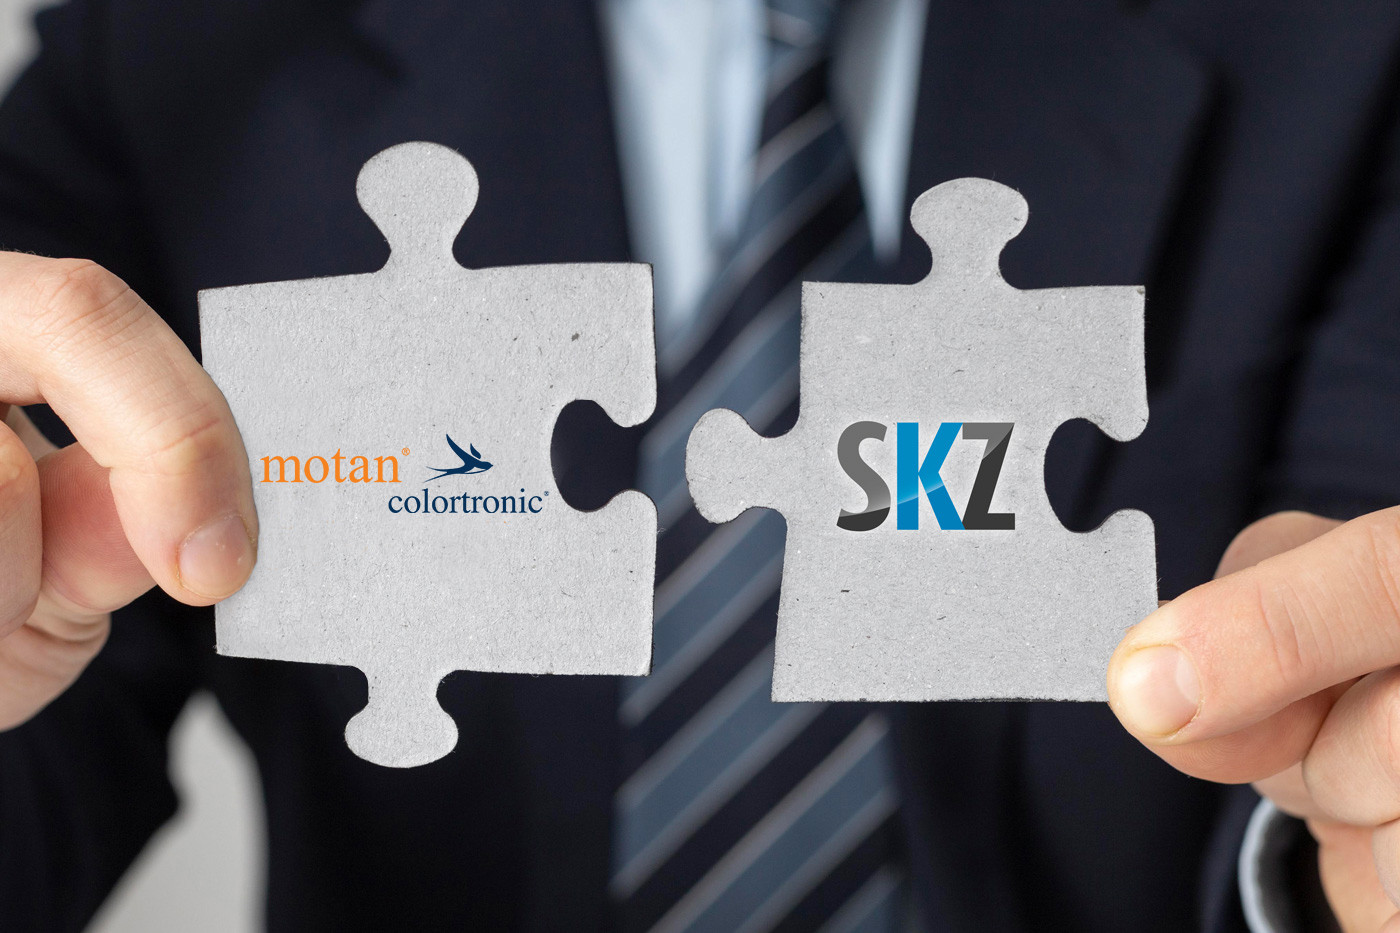 Die Motan-colortronic GmbH und das SKZ kooperieren in der Ausbildung von Fachkräften.